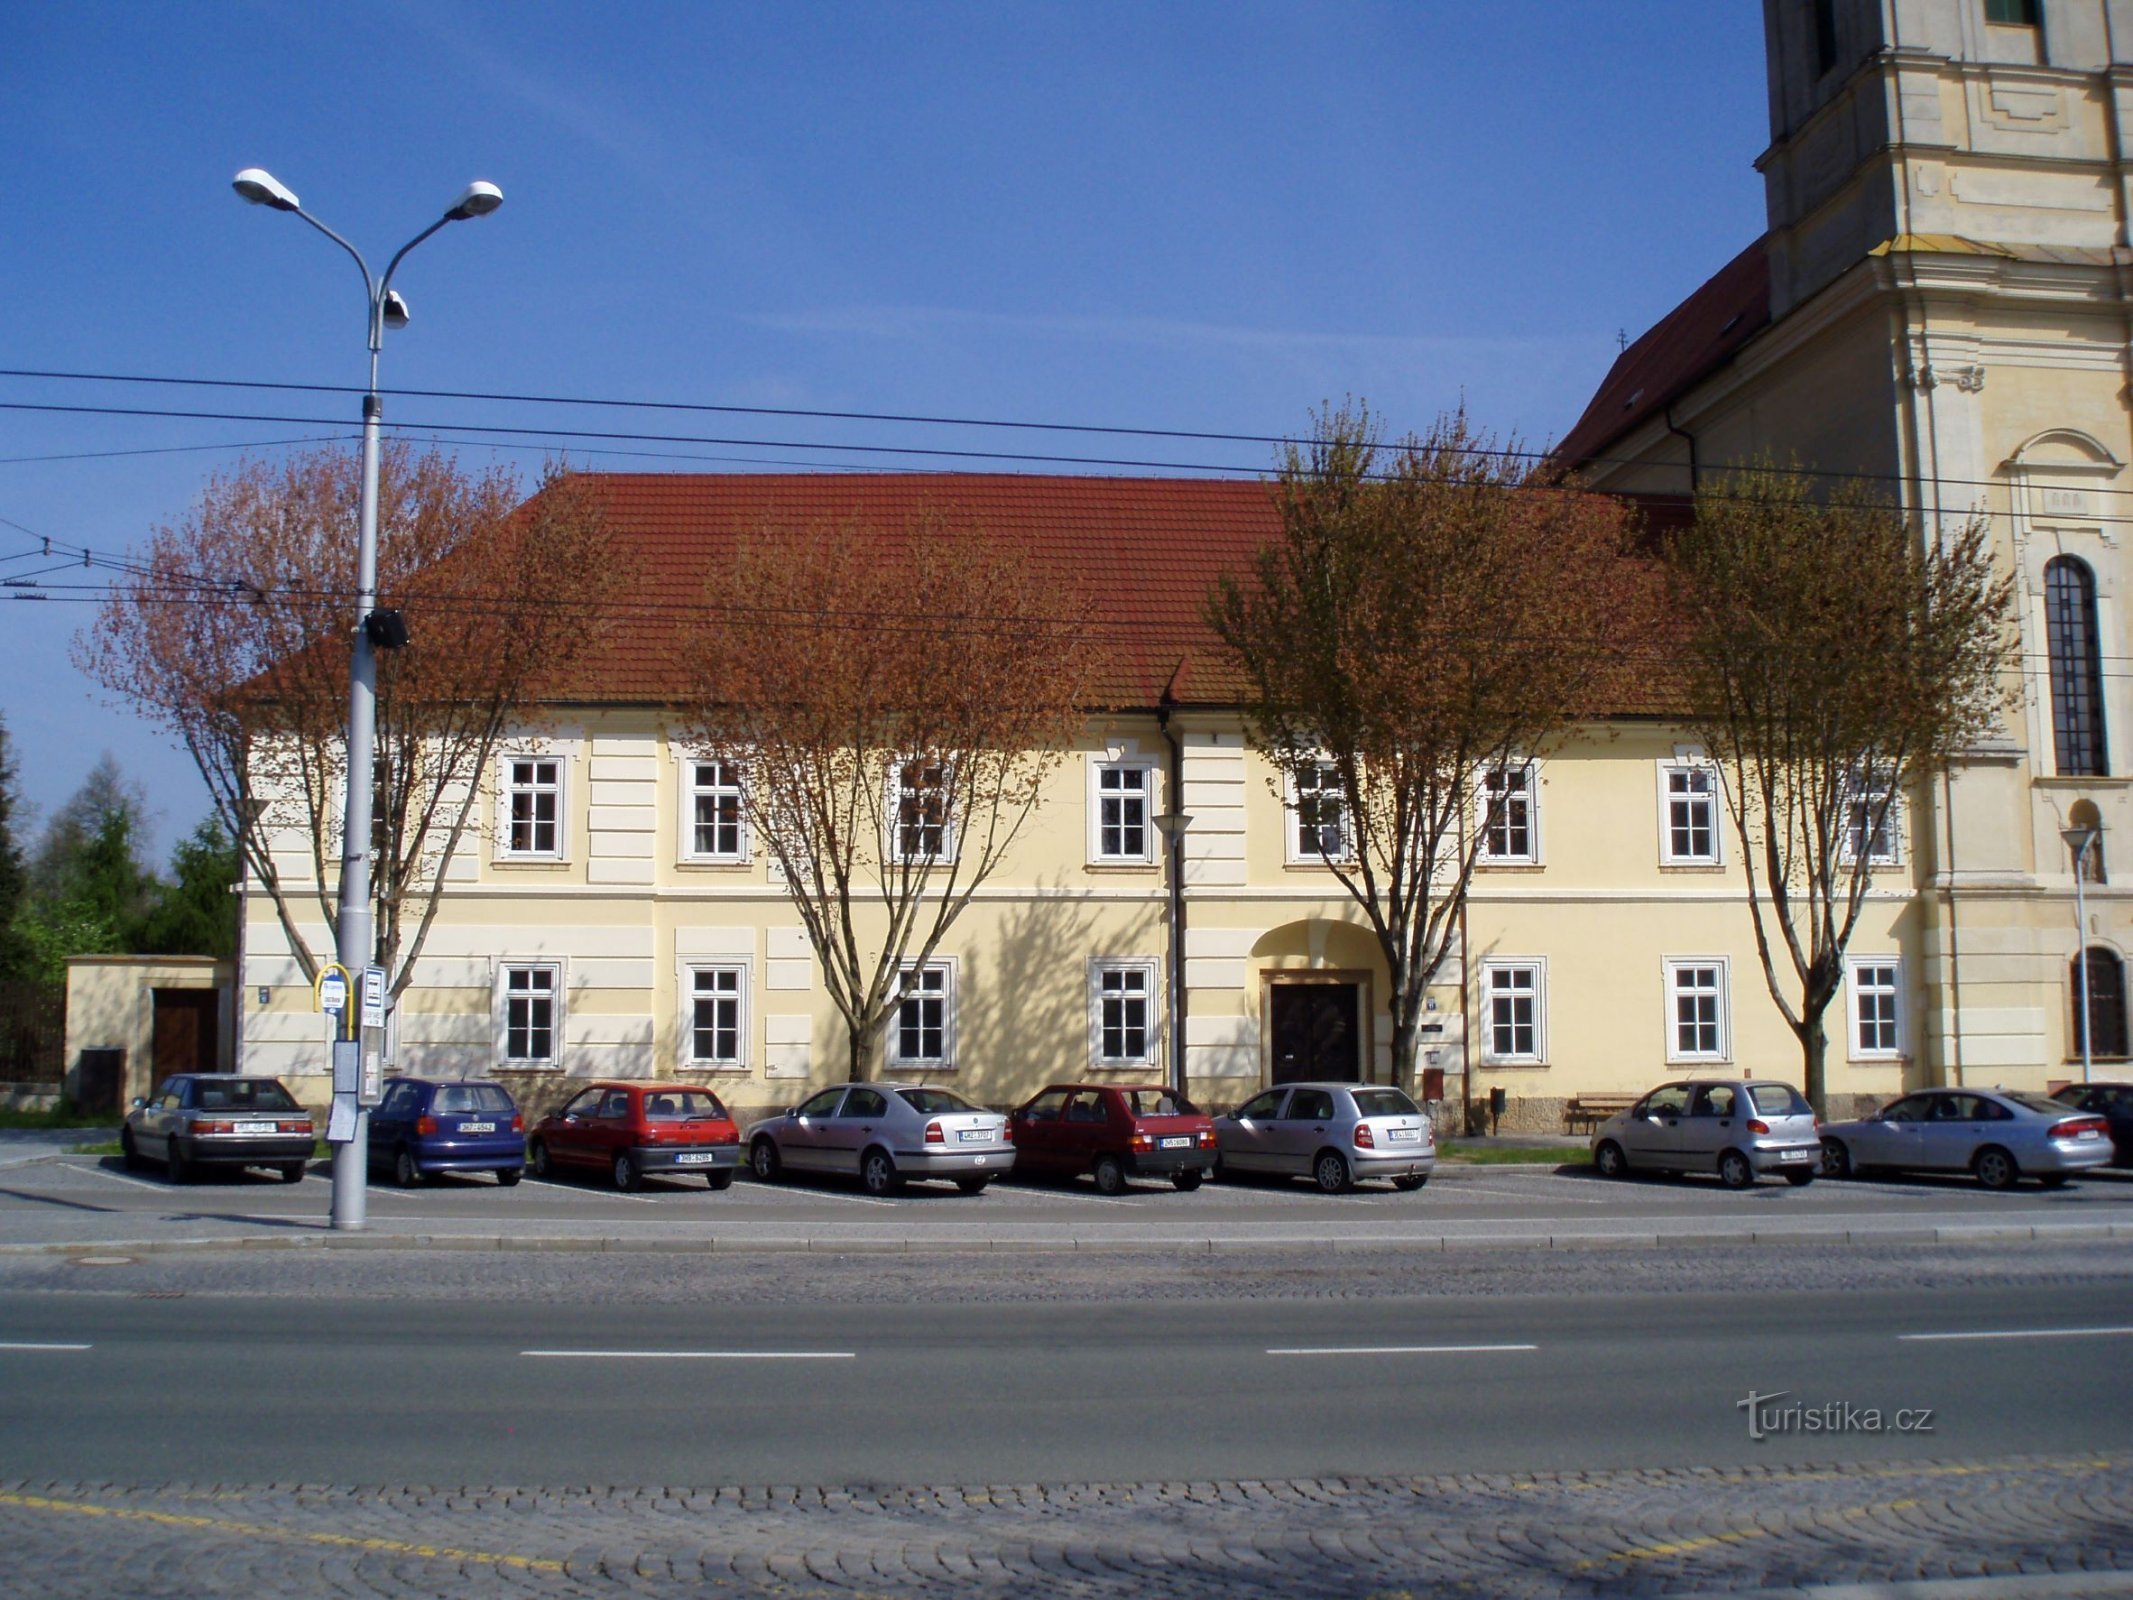 Nekdanji samostan (Denisovo náměstí št. 26 in 172, Hradec Králové, 28.4.2010. XNUMX. XNUMX)